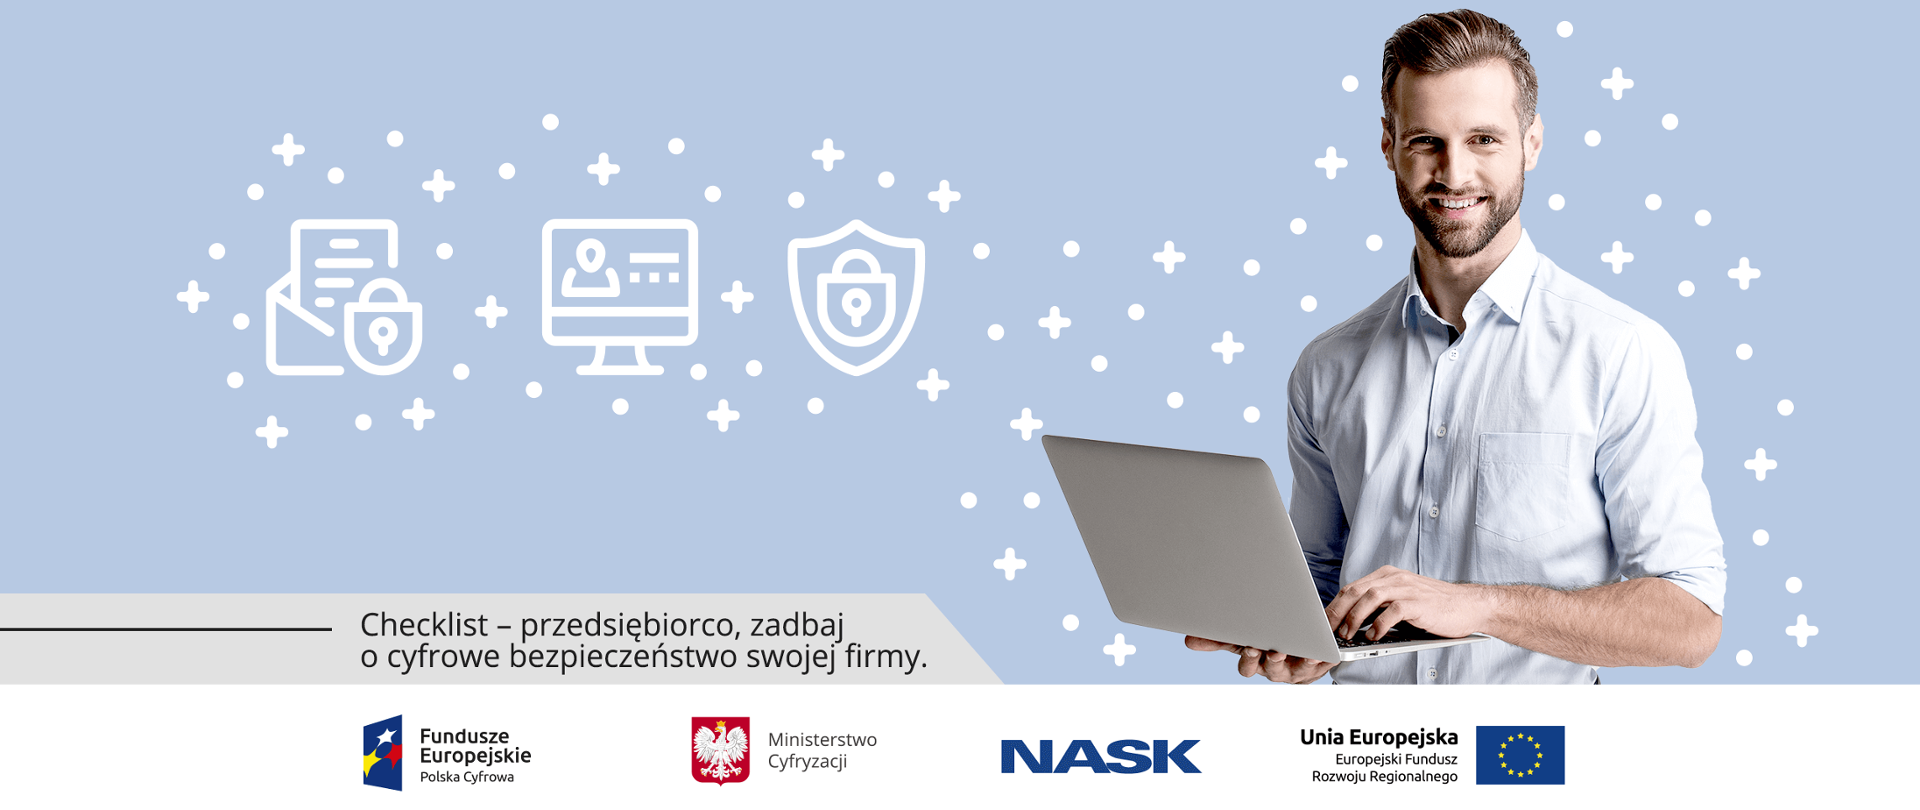 Grafika. Mężczyzna trzymający w dłoniach otwartego laptopa. Poniżej napis: Checklist - przedsiębiorco zadbaj o cyfrowe bezpieczeństwo swojej firmy.